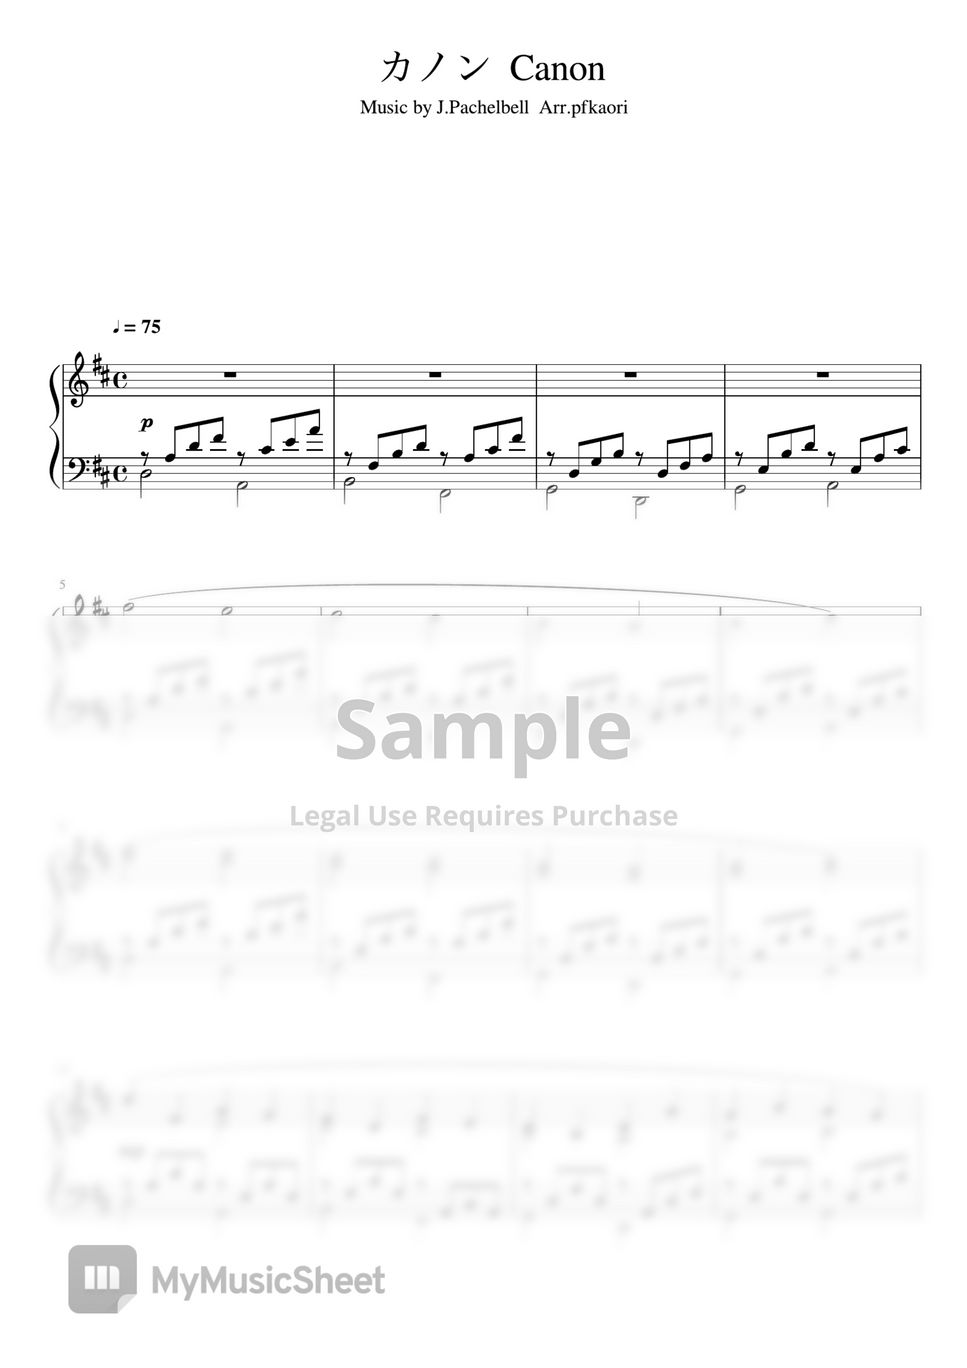 J.Pachelbel - Canon (Ddur・Intermediate to advanced piano solo) by pfkaori